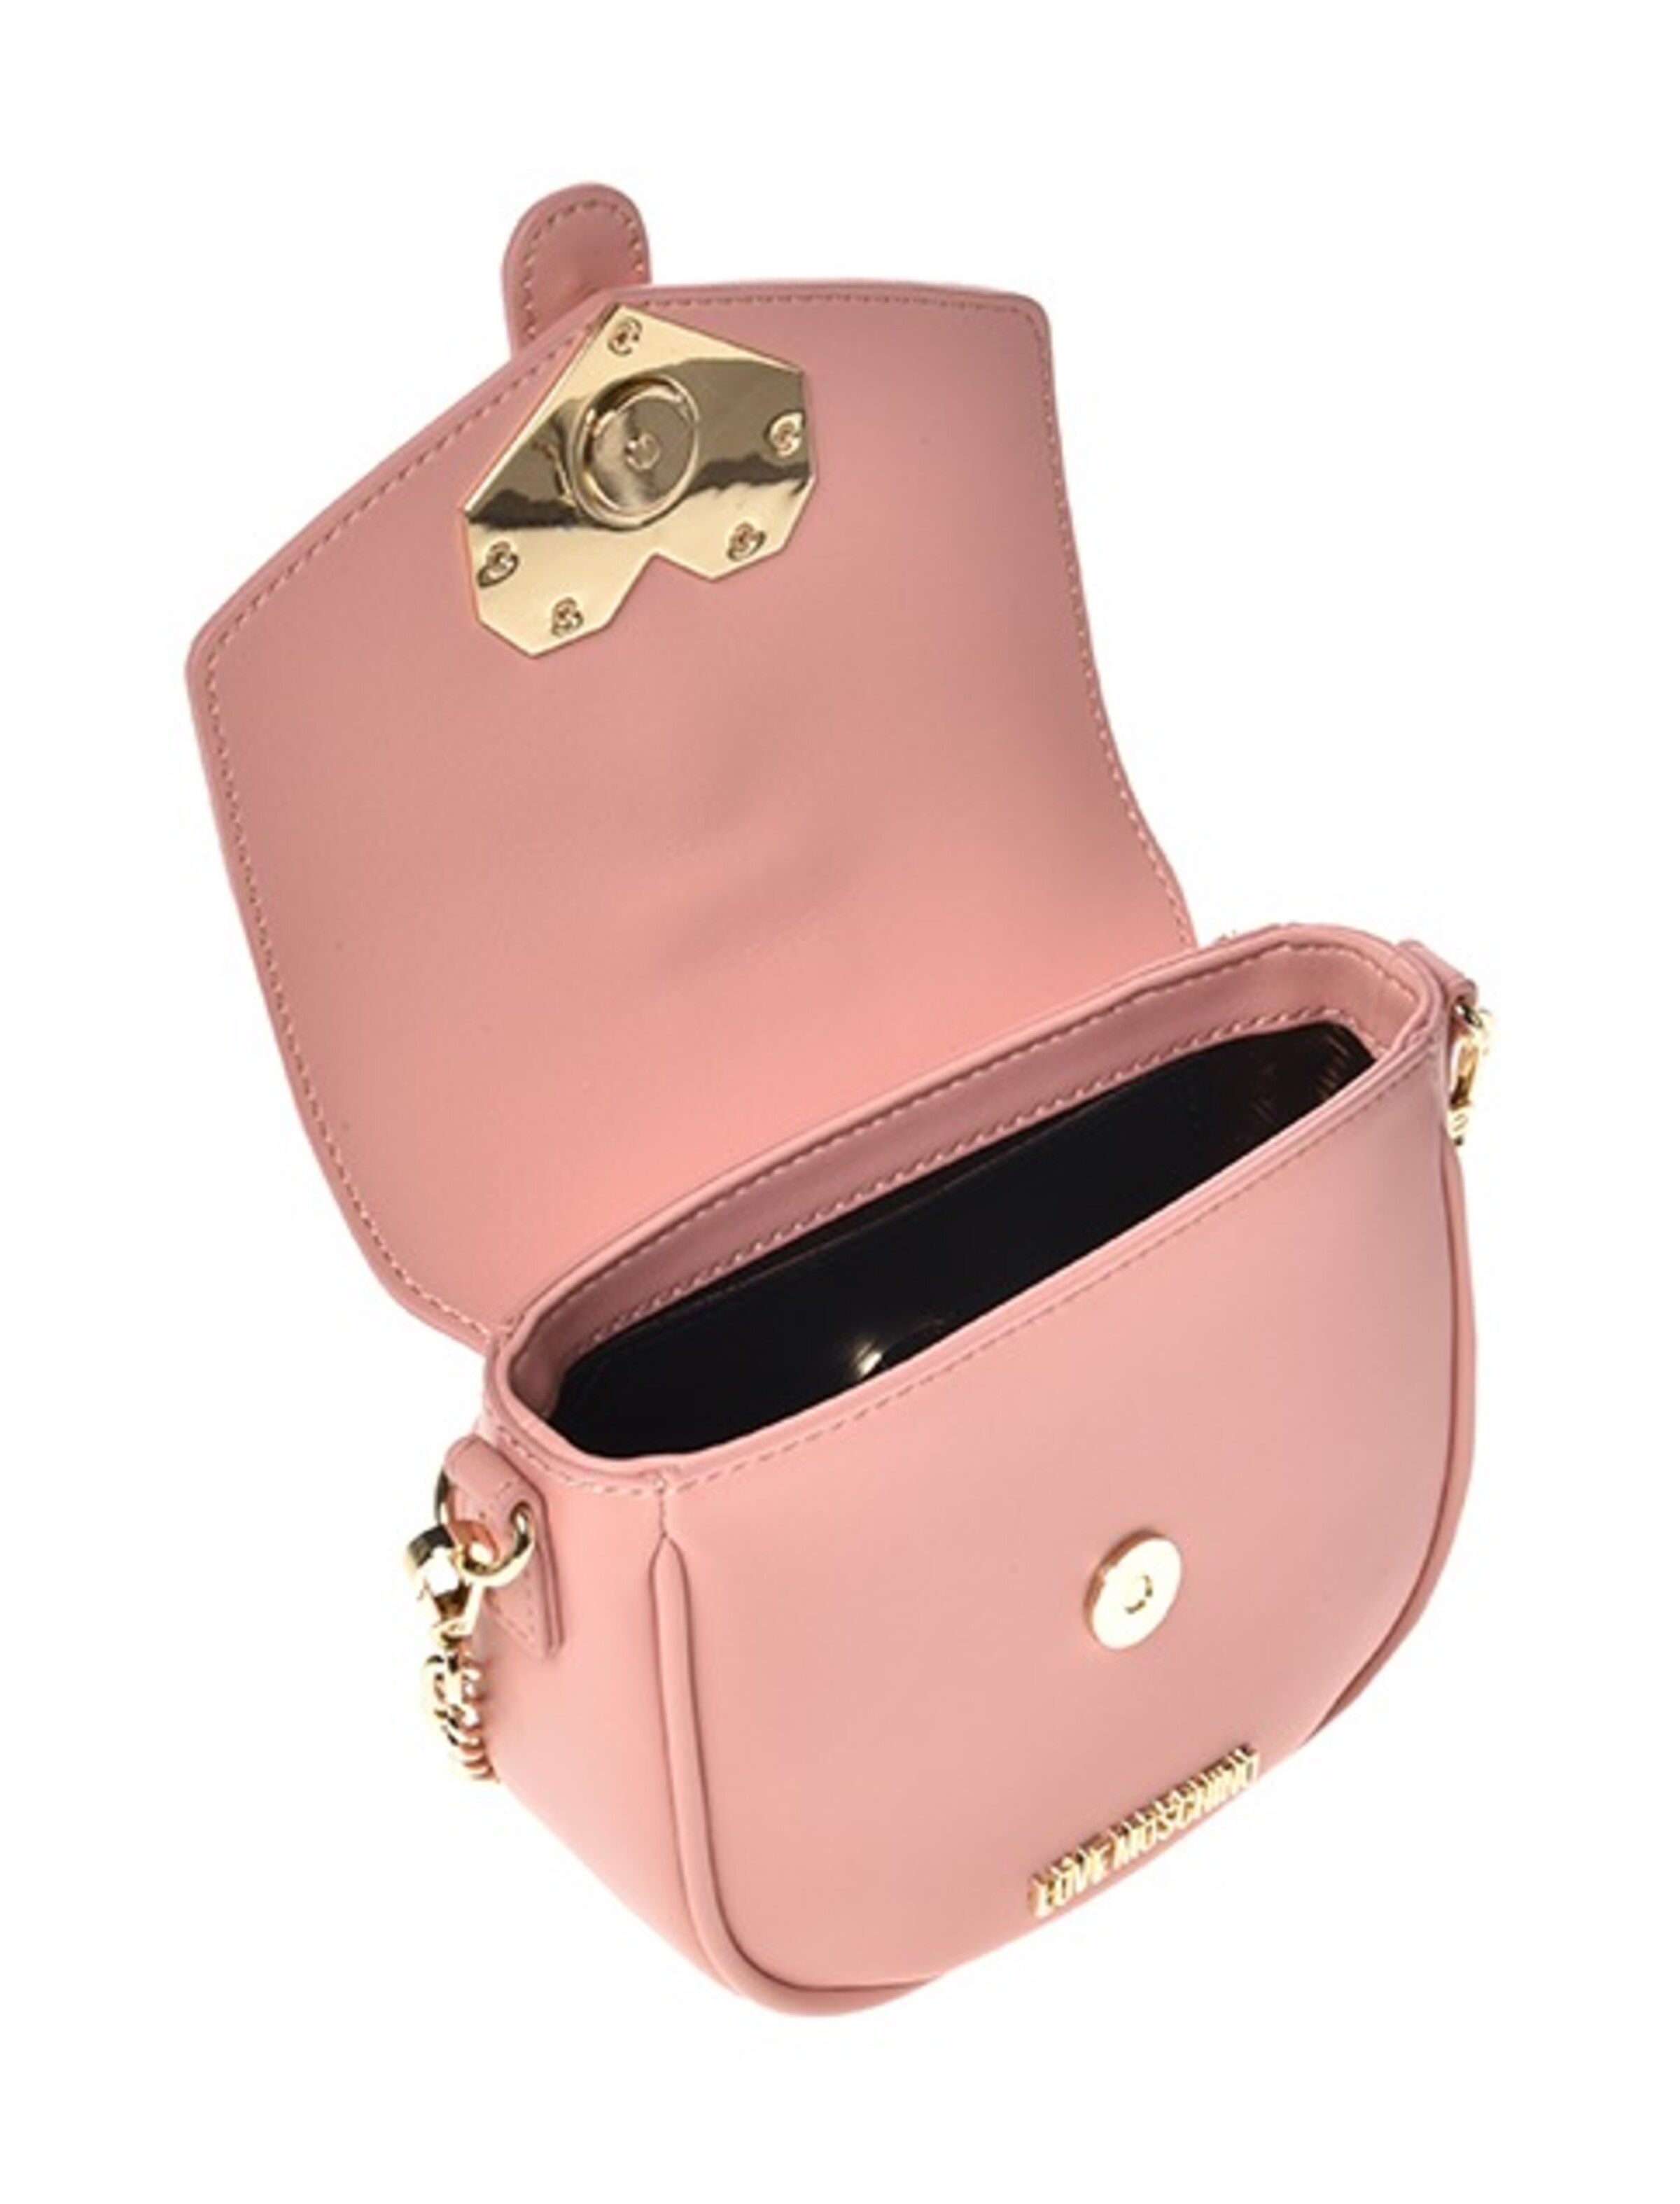 Frauen Taschen & Rucksäcke Love Moschino Handtasche in Rosa - FE96402